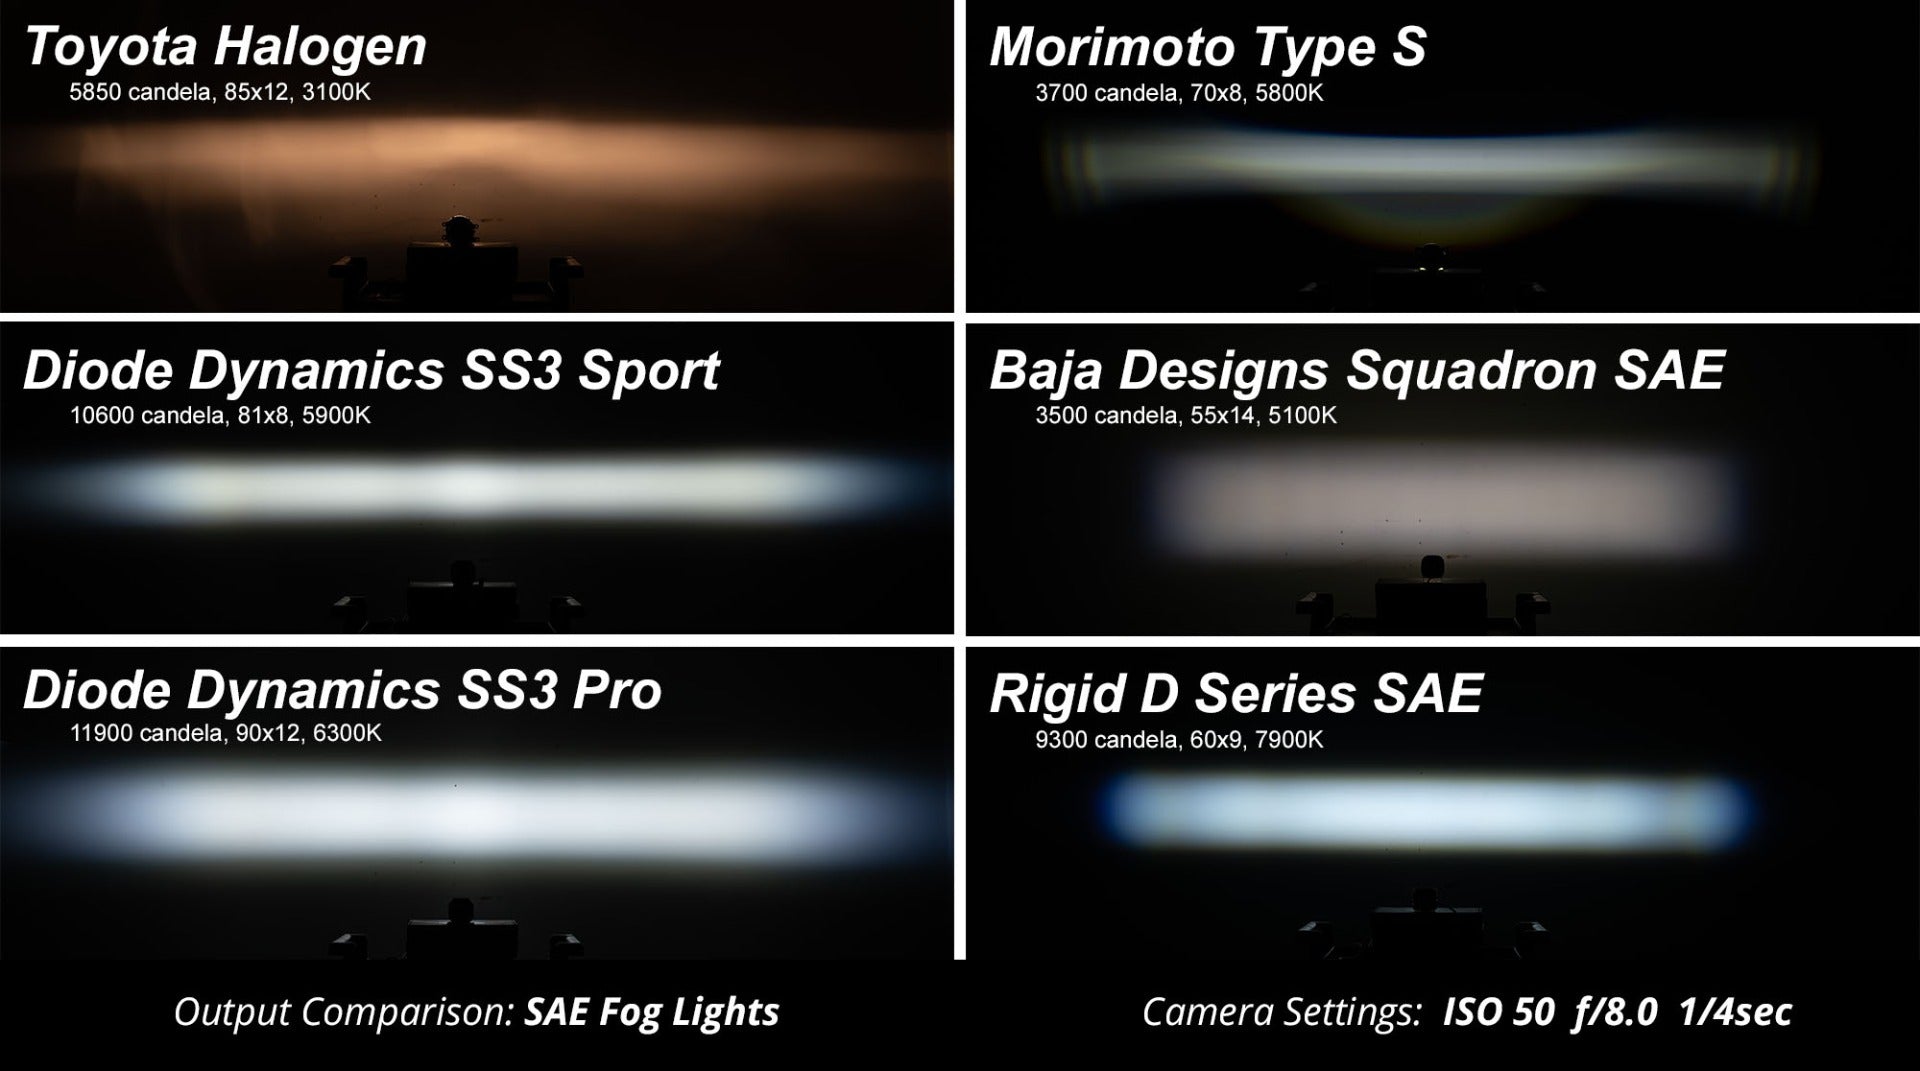 SS3 LED Fog Light Kit for 2010-2021 Toyota 4Runner, White SAE Fog Max